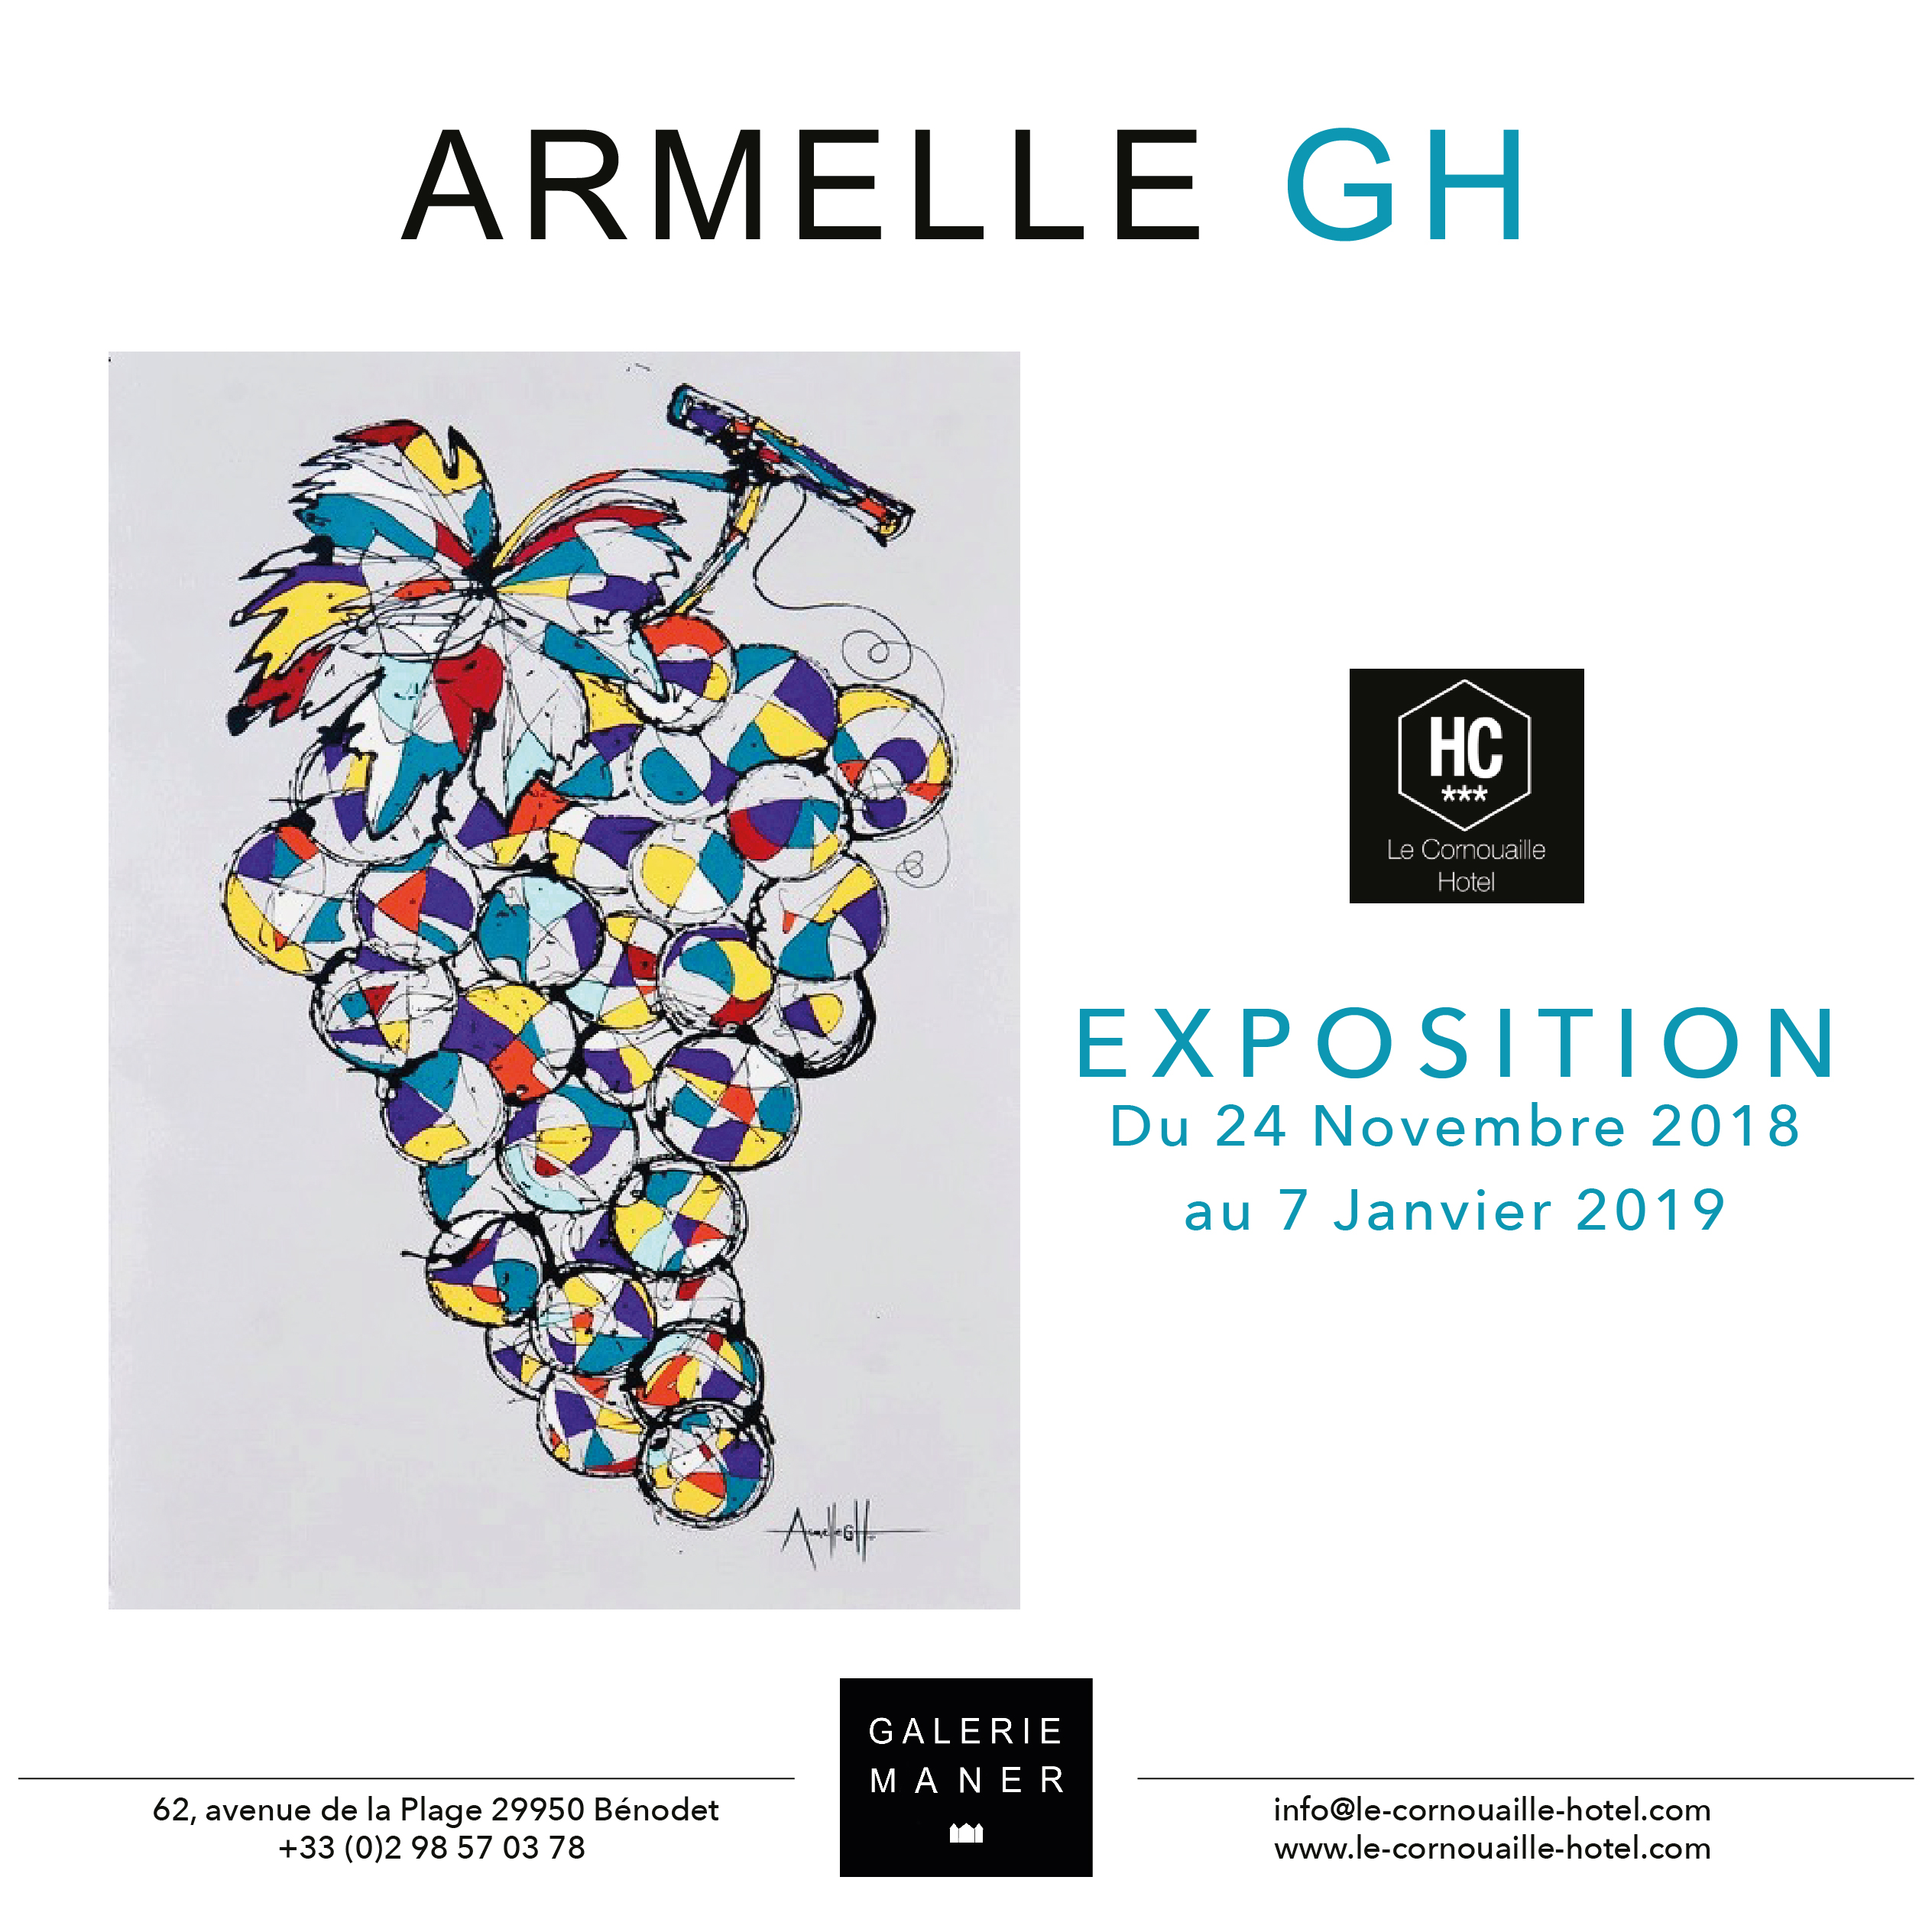 superbe exposition Armelle GH peinture fruits raisin cerise Hotel le Cornouaille hotel bénodet art contemporain Galerie Maner pont aven